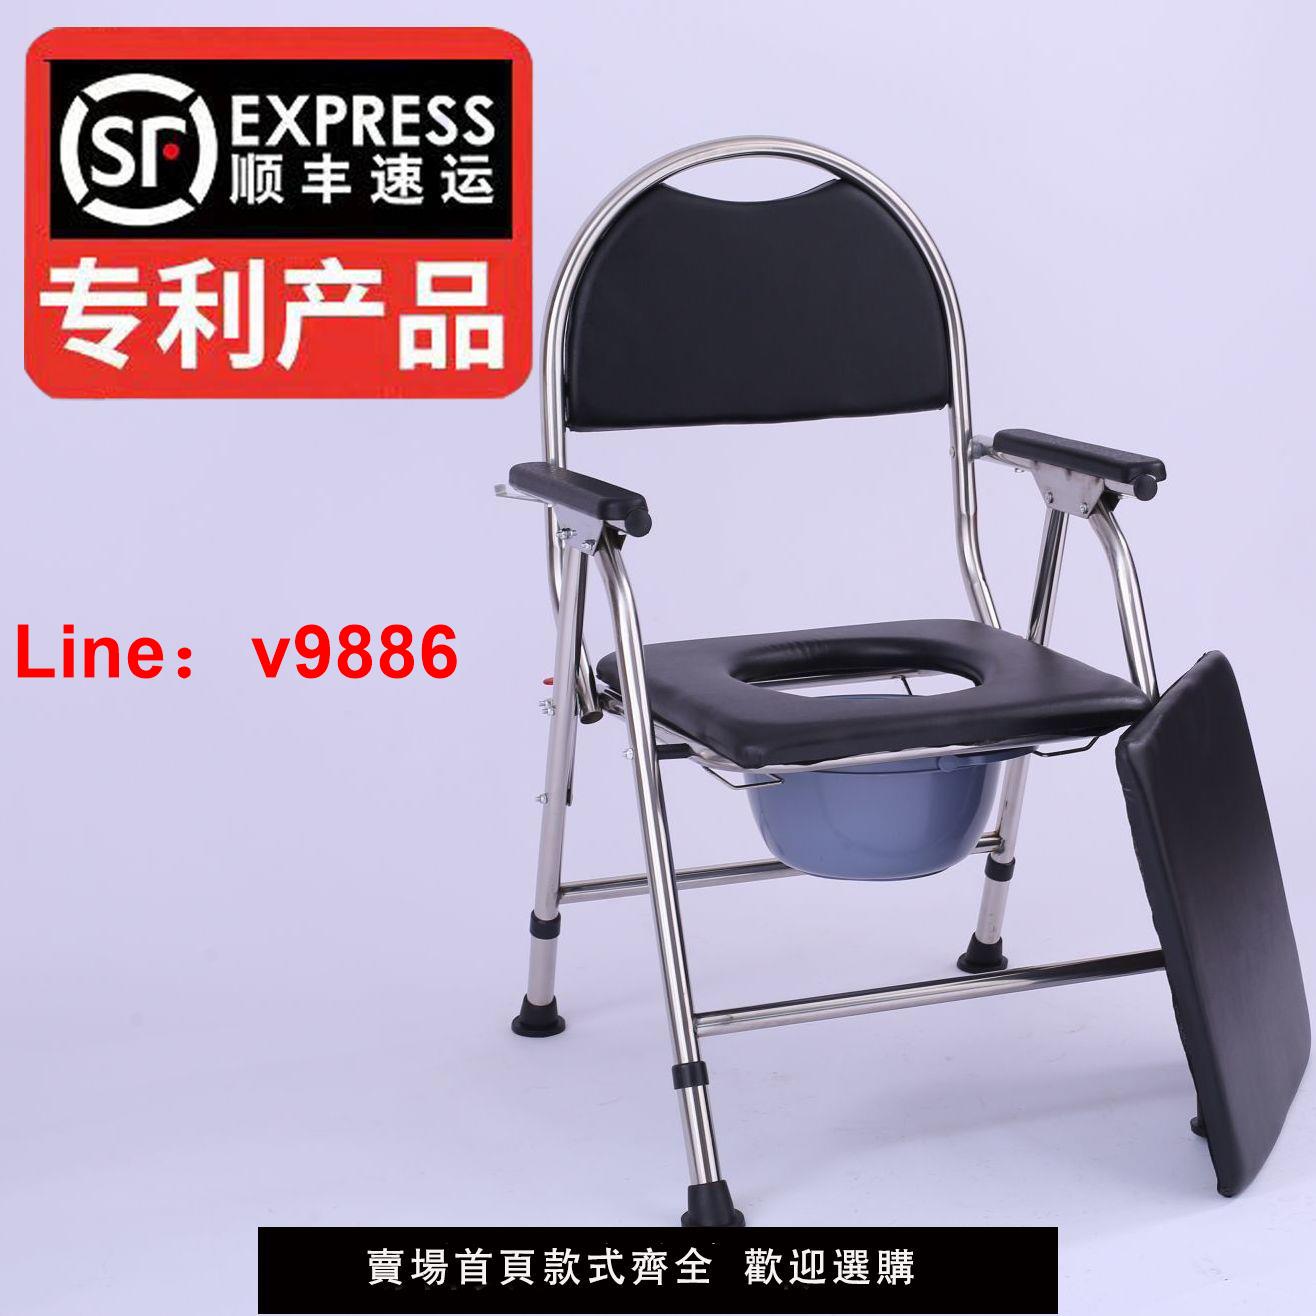 【台灣公司 超低價】老年人馬桶老人殘疾病人坐便器老人孕婦坐便椅家用可折疊移動馬桶